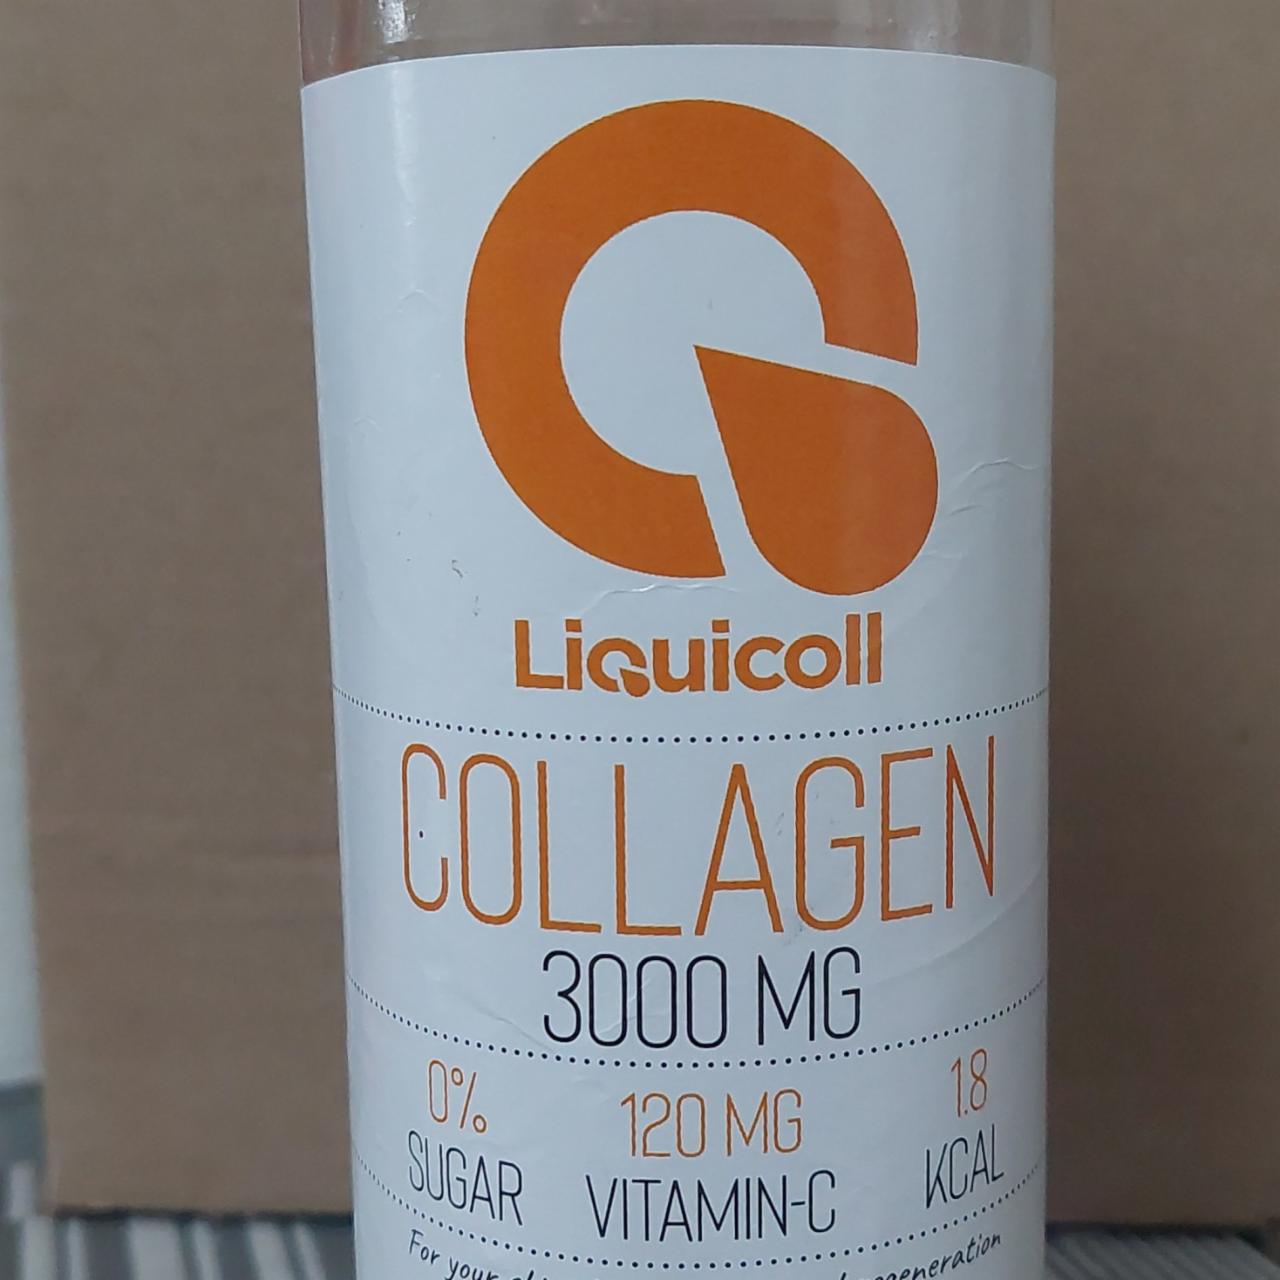 Képek - Collagen mango Liquicoll